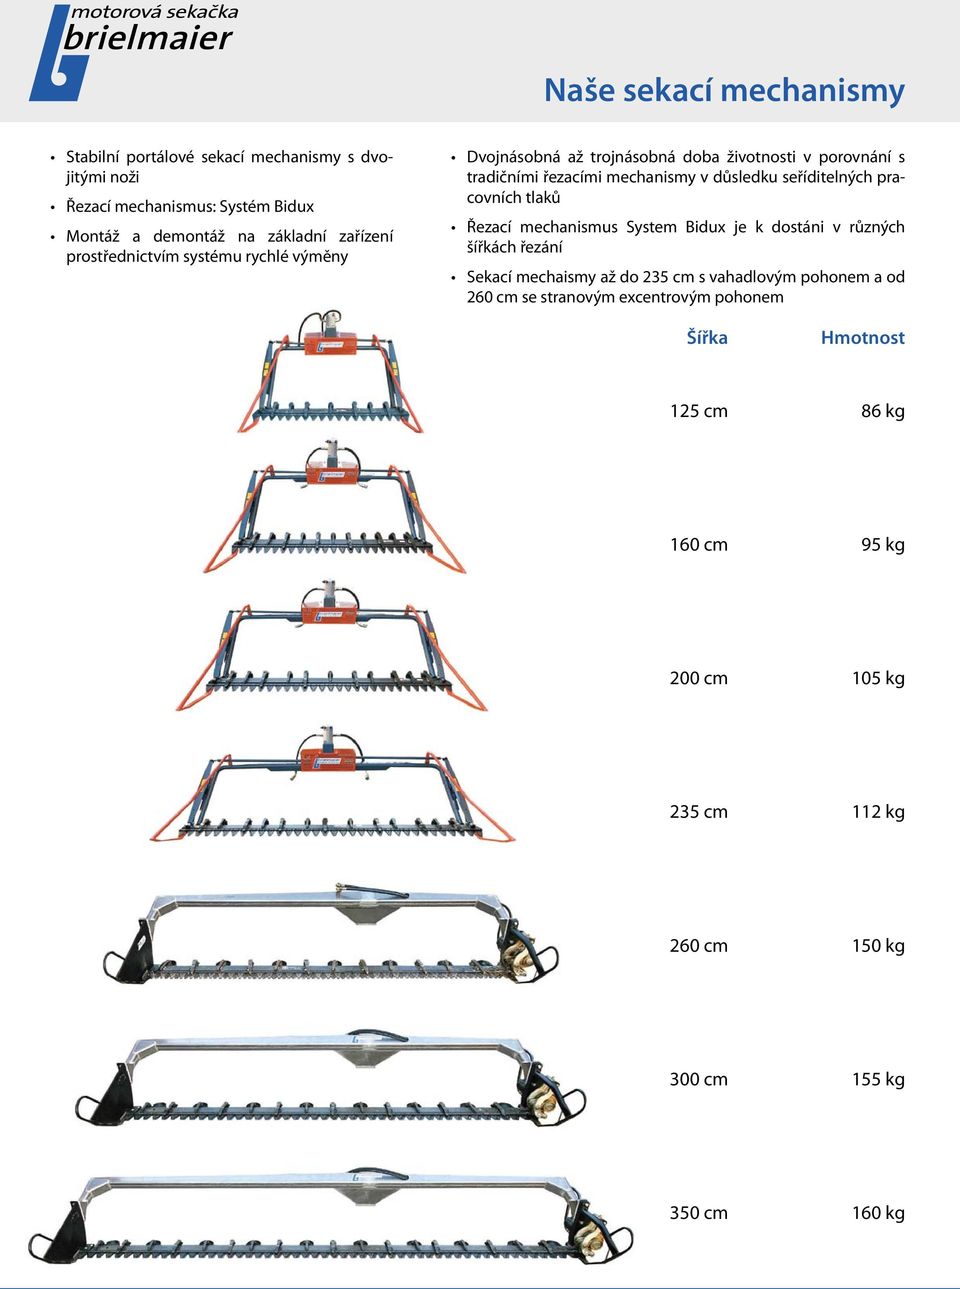 seříditelných pracovních tlaků Řezací mechanismus System Bidux je k dostáni v různých šířkách řezání Sekací mechaismy až do 235 cm s vahadlovým